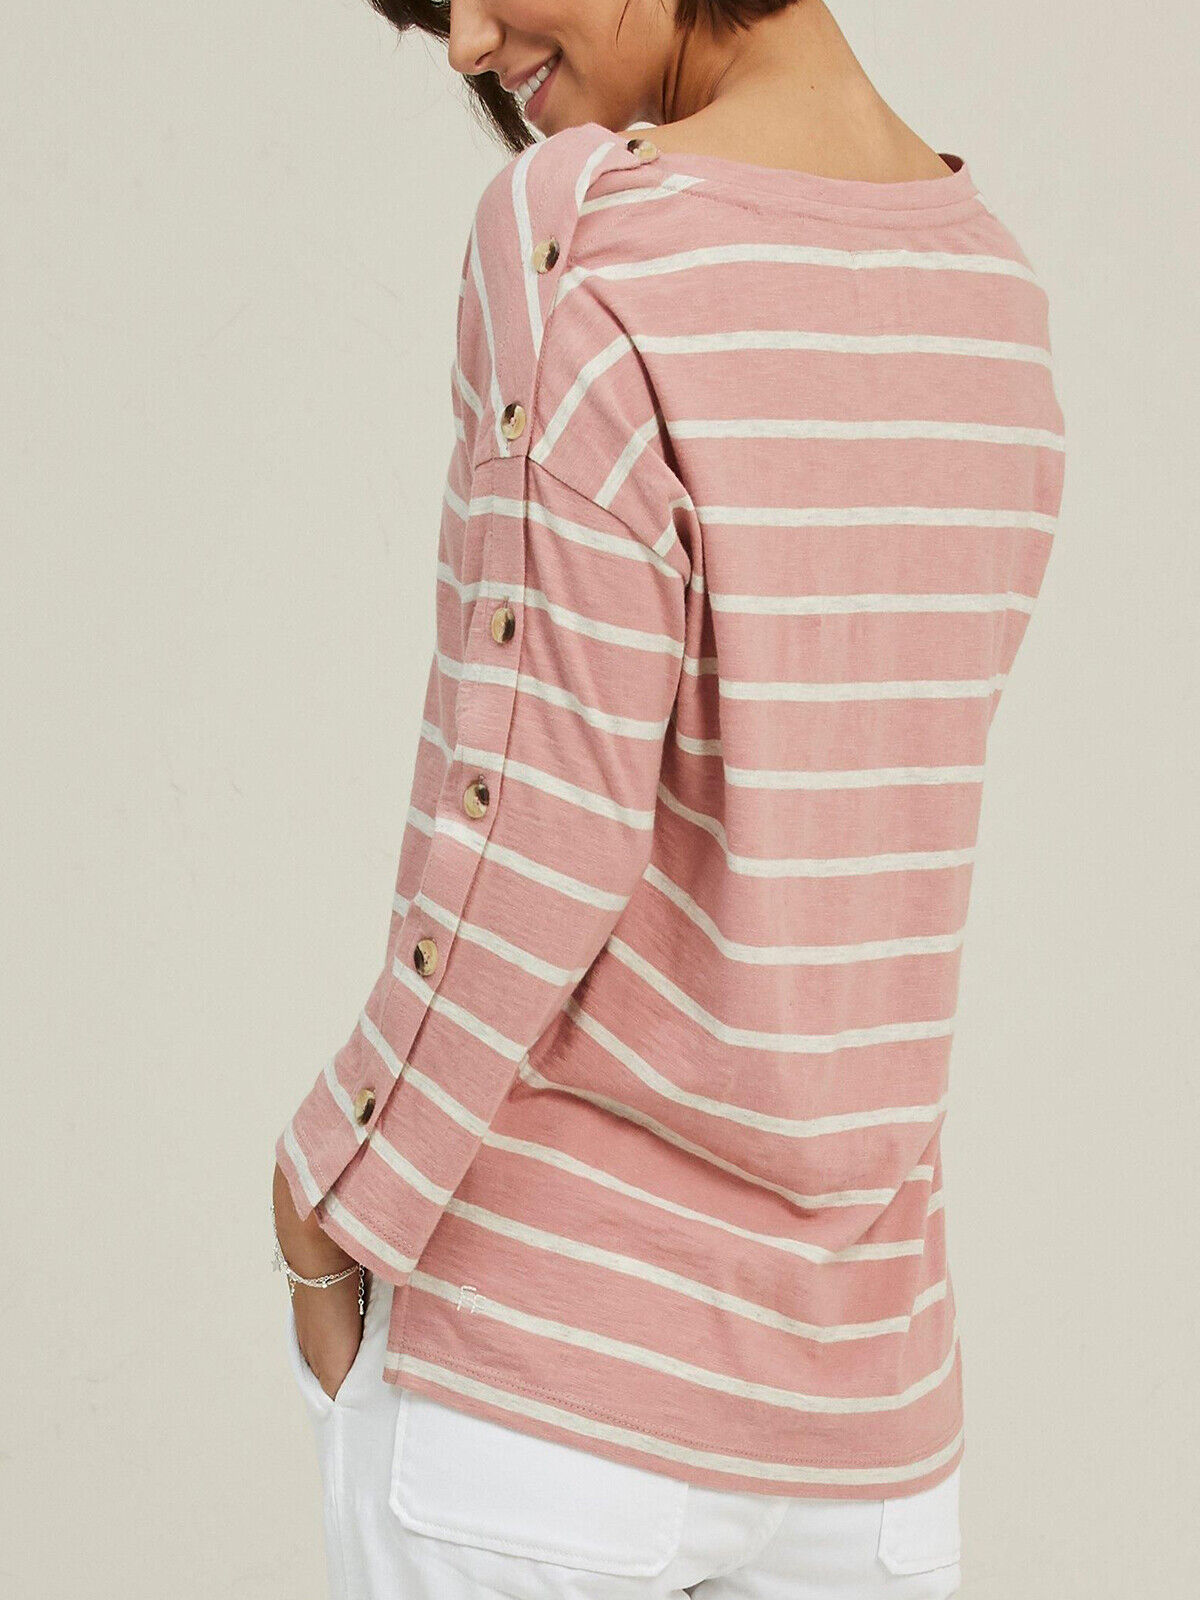 EX Fat Face Pink Shrimp Kinsley Drop Shoulder Stripe Top in Size 8 RRP £29.50